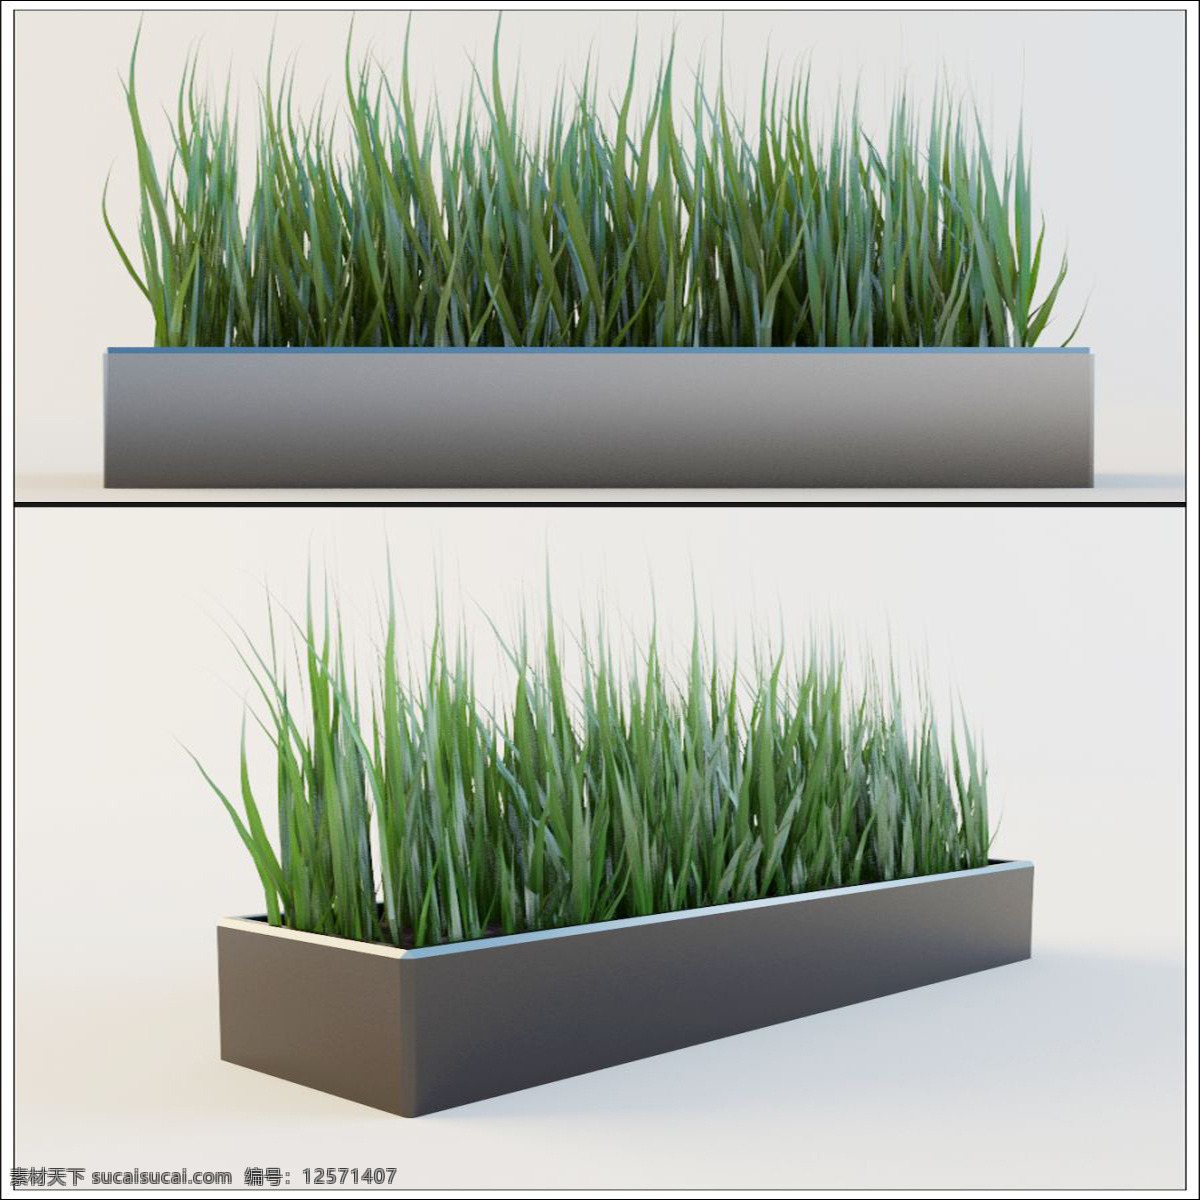 精美 绿色植物 3d 模型 绿色 植物 盆景 3d模型 3d渲染 模型素材